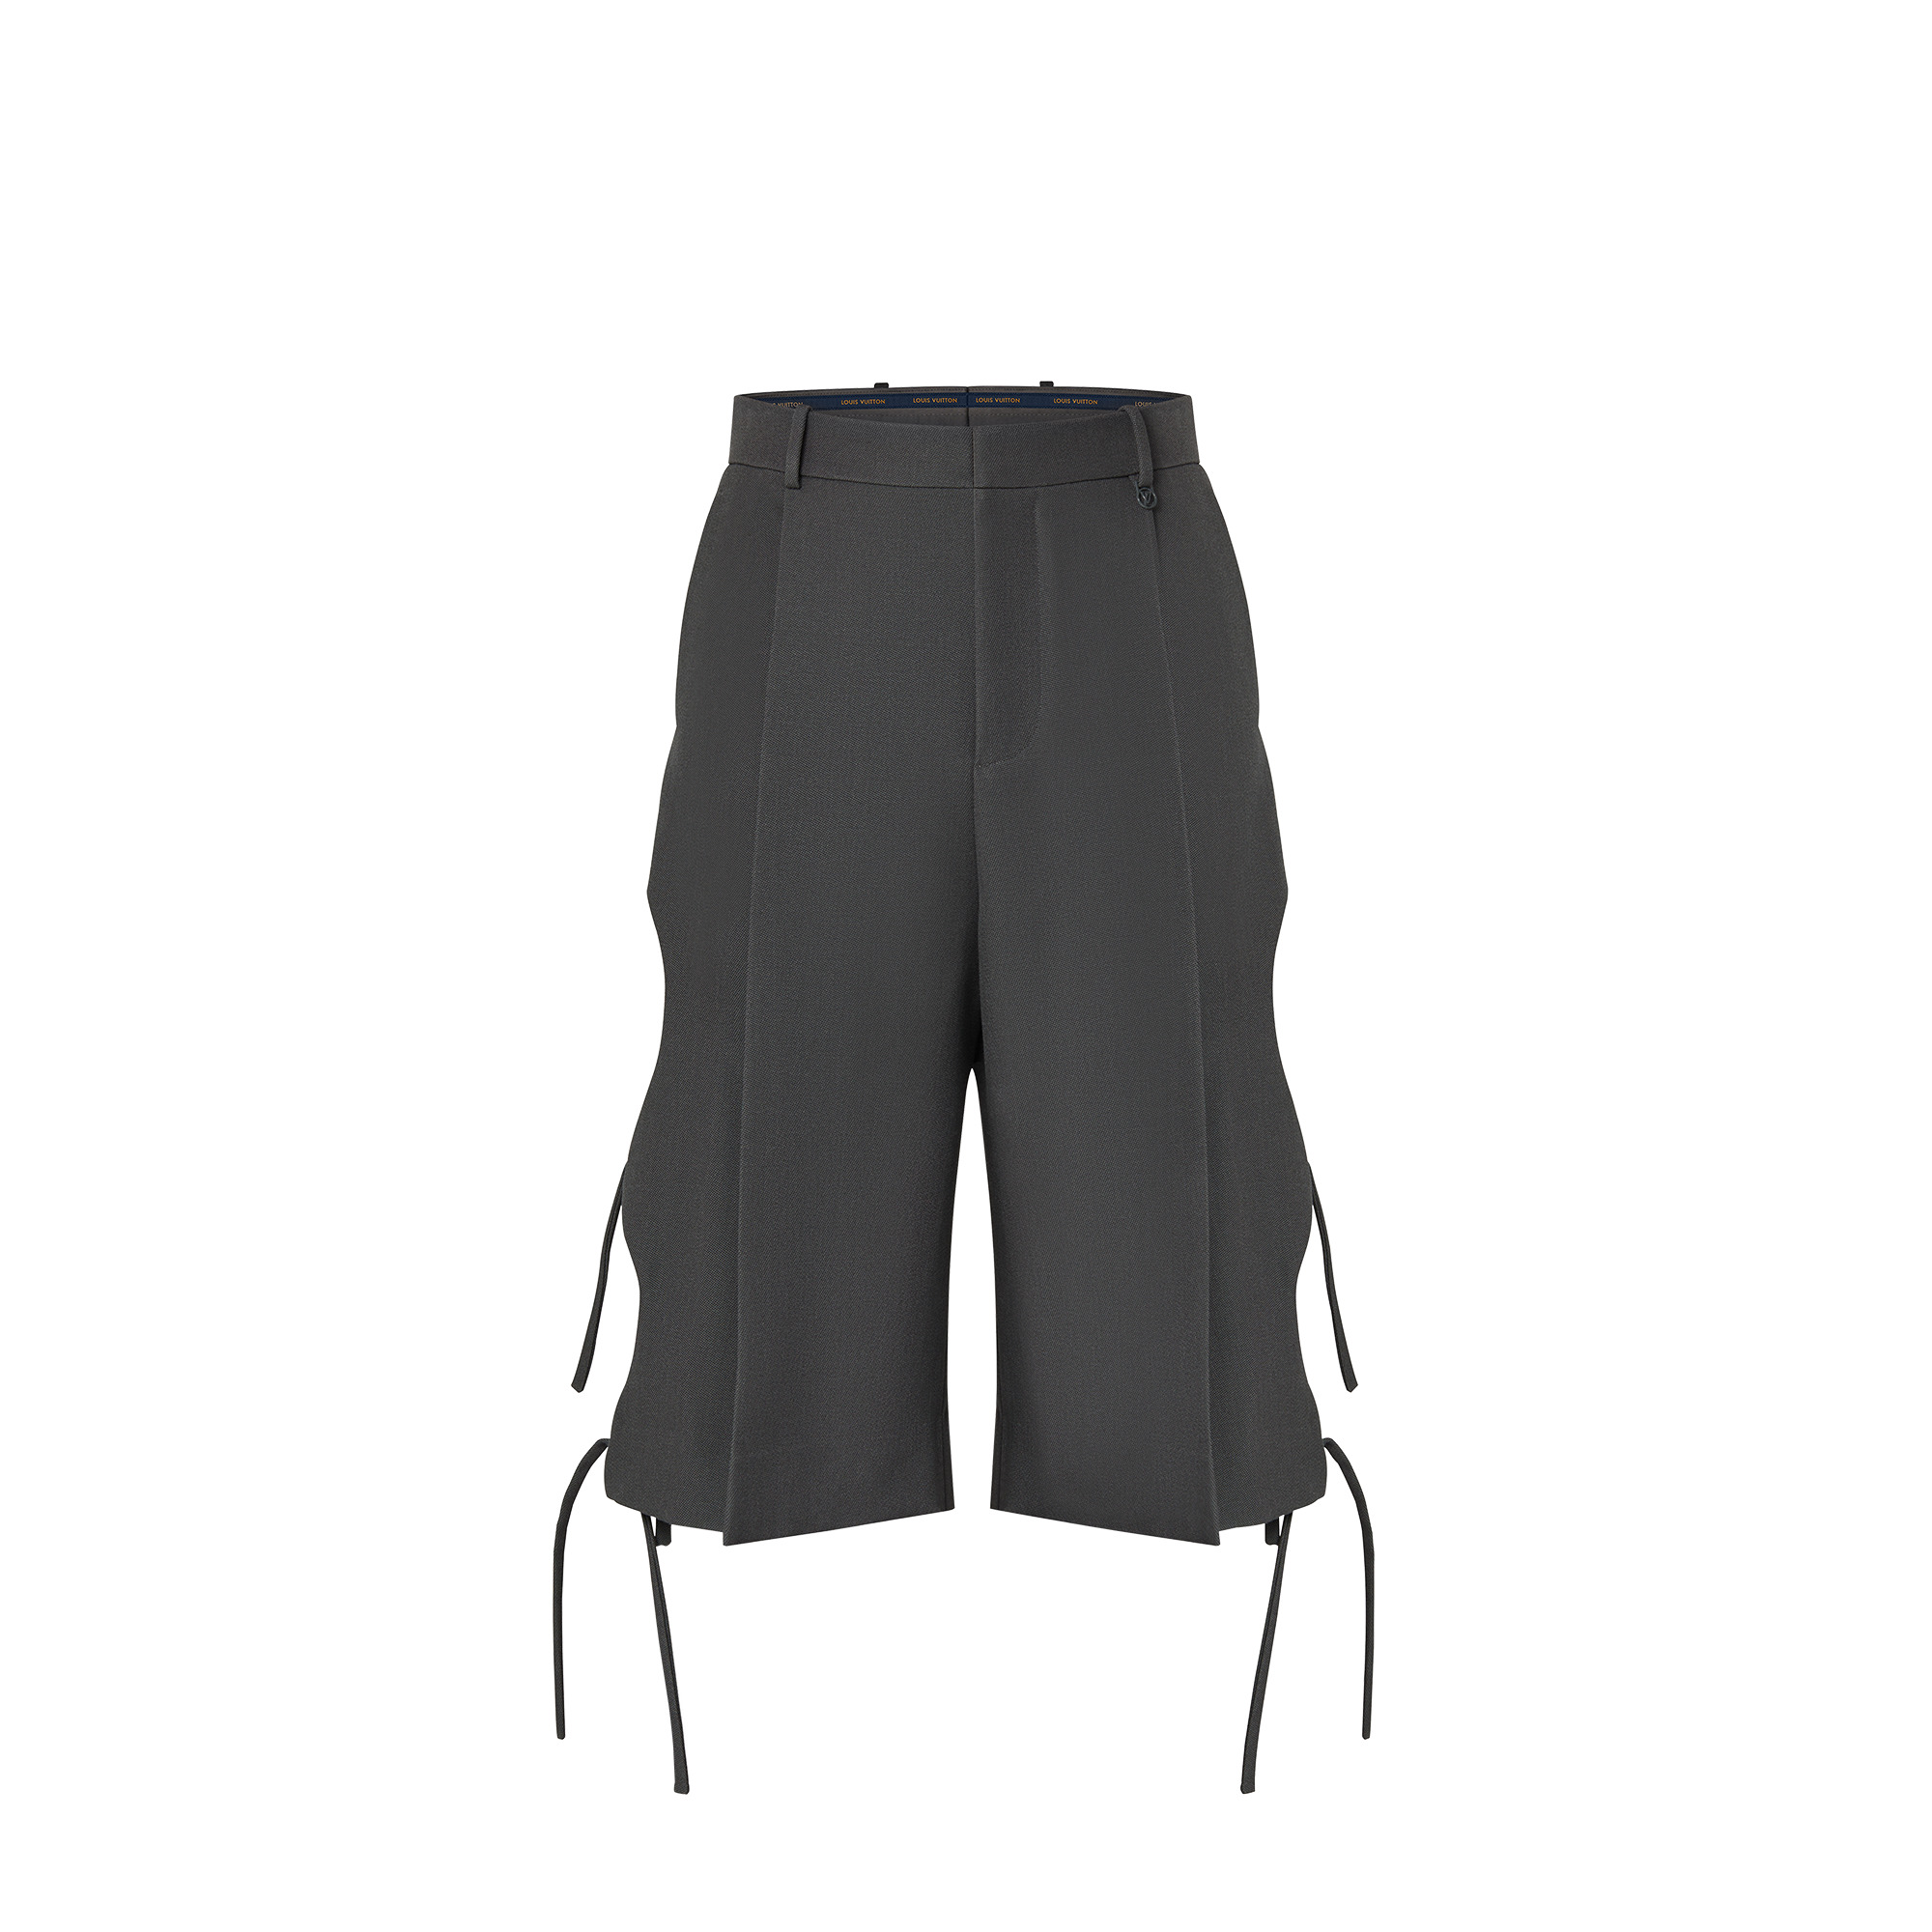 Strappy Shorts - 1